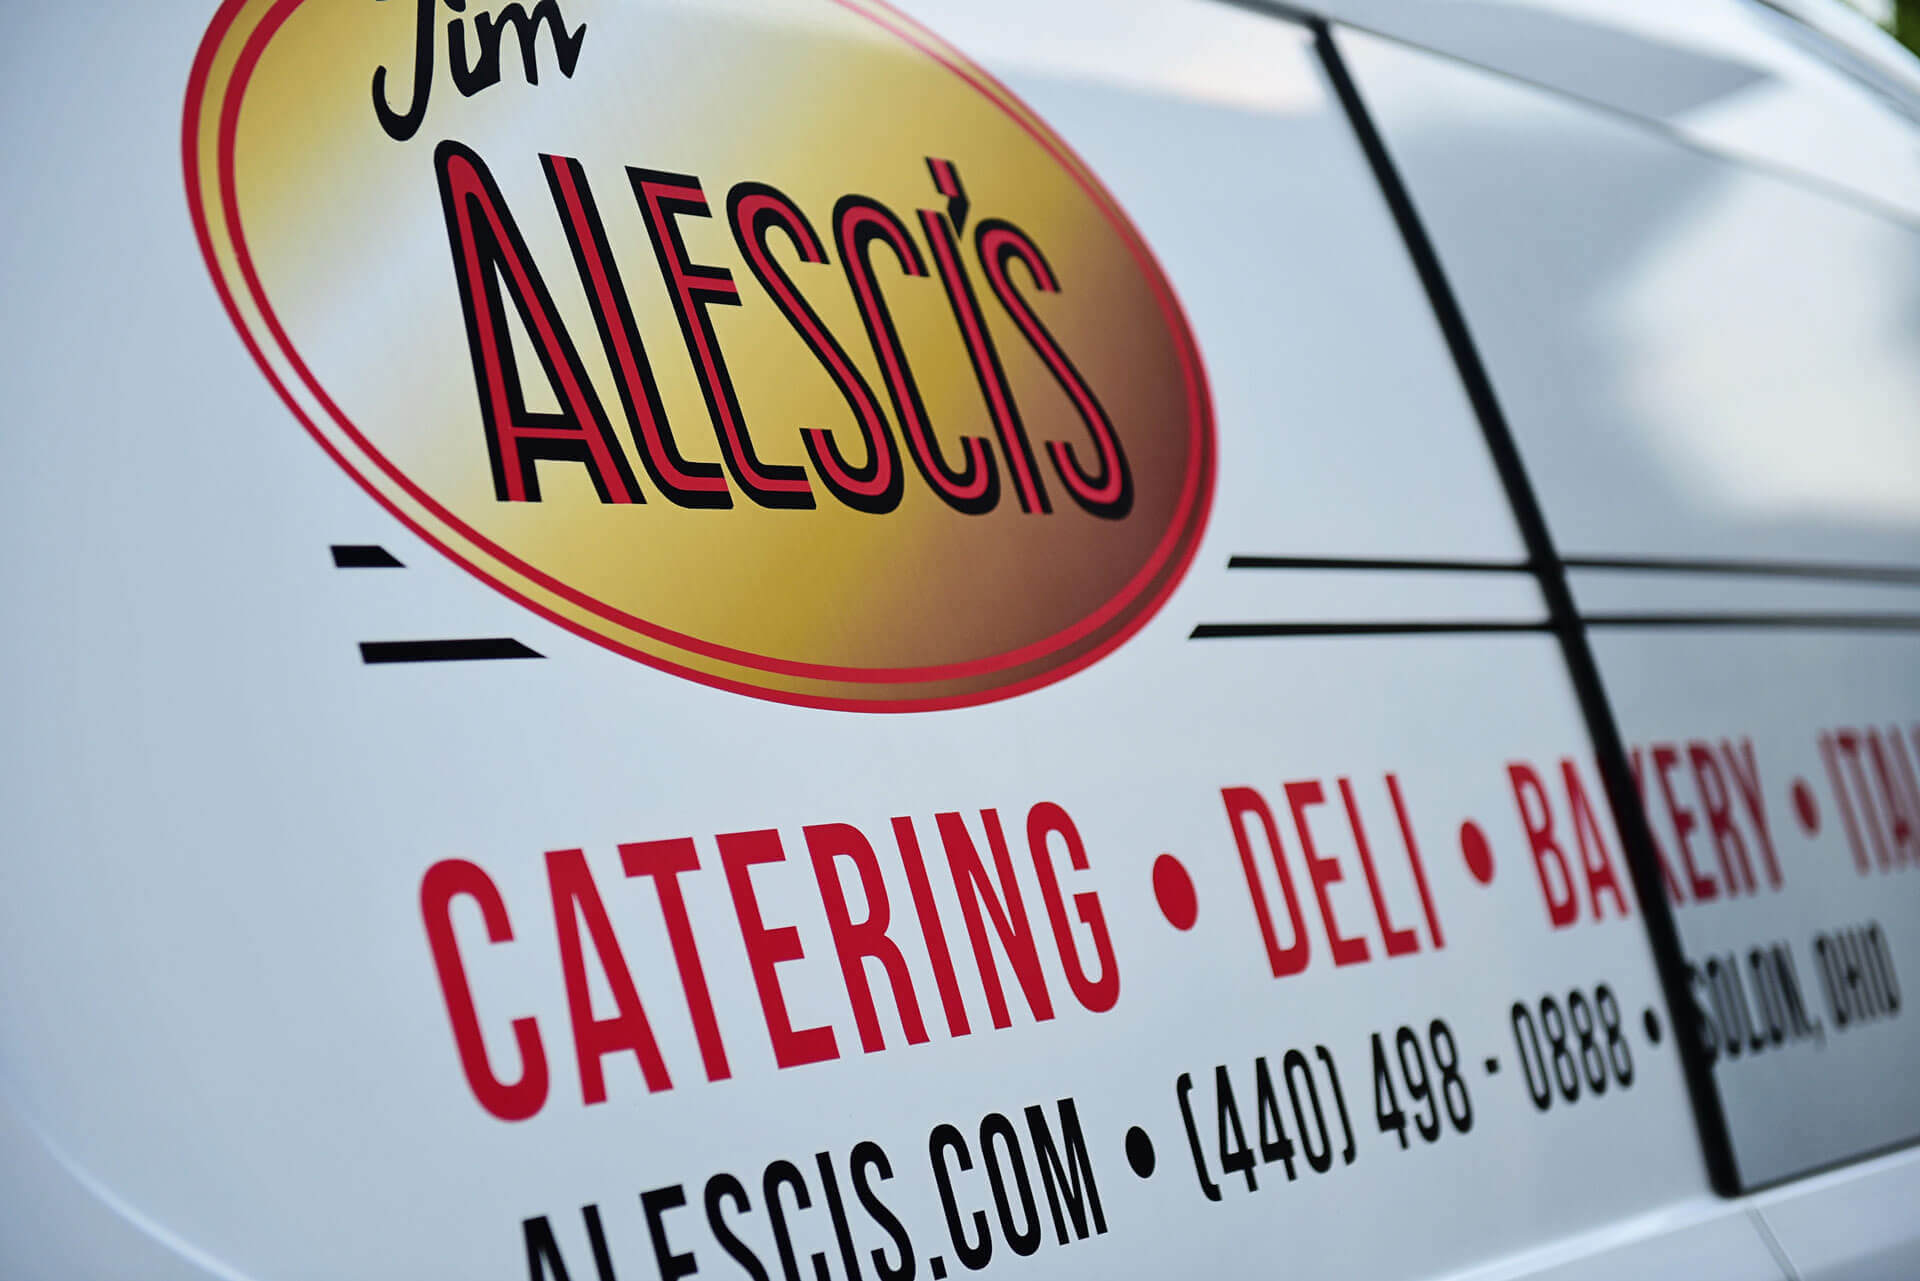 Jim Alesci's Place Catering Van